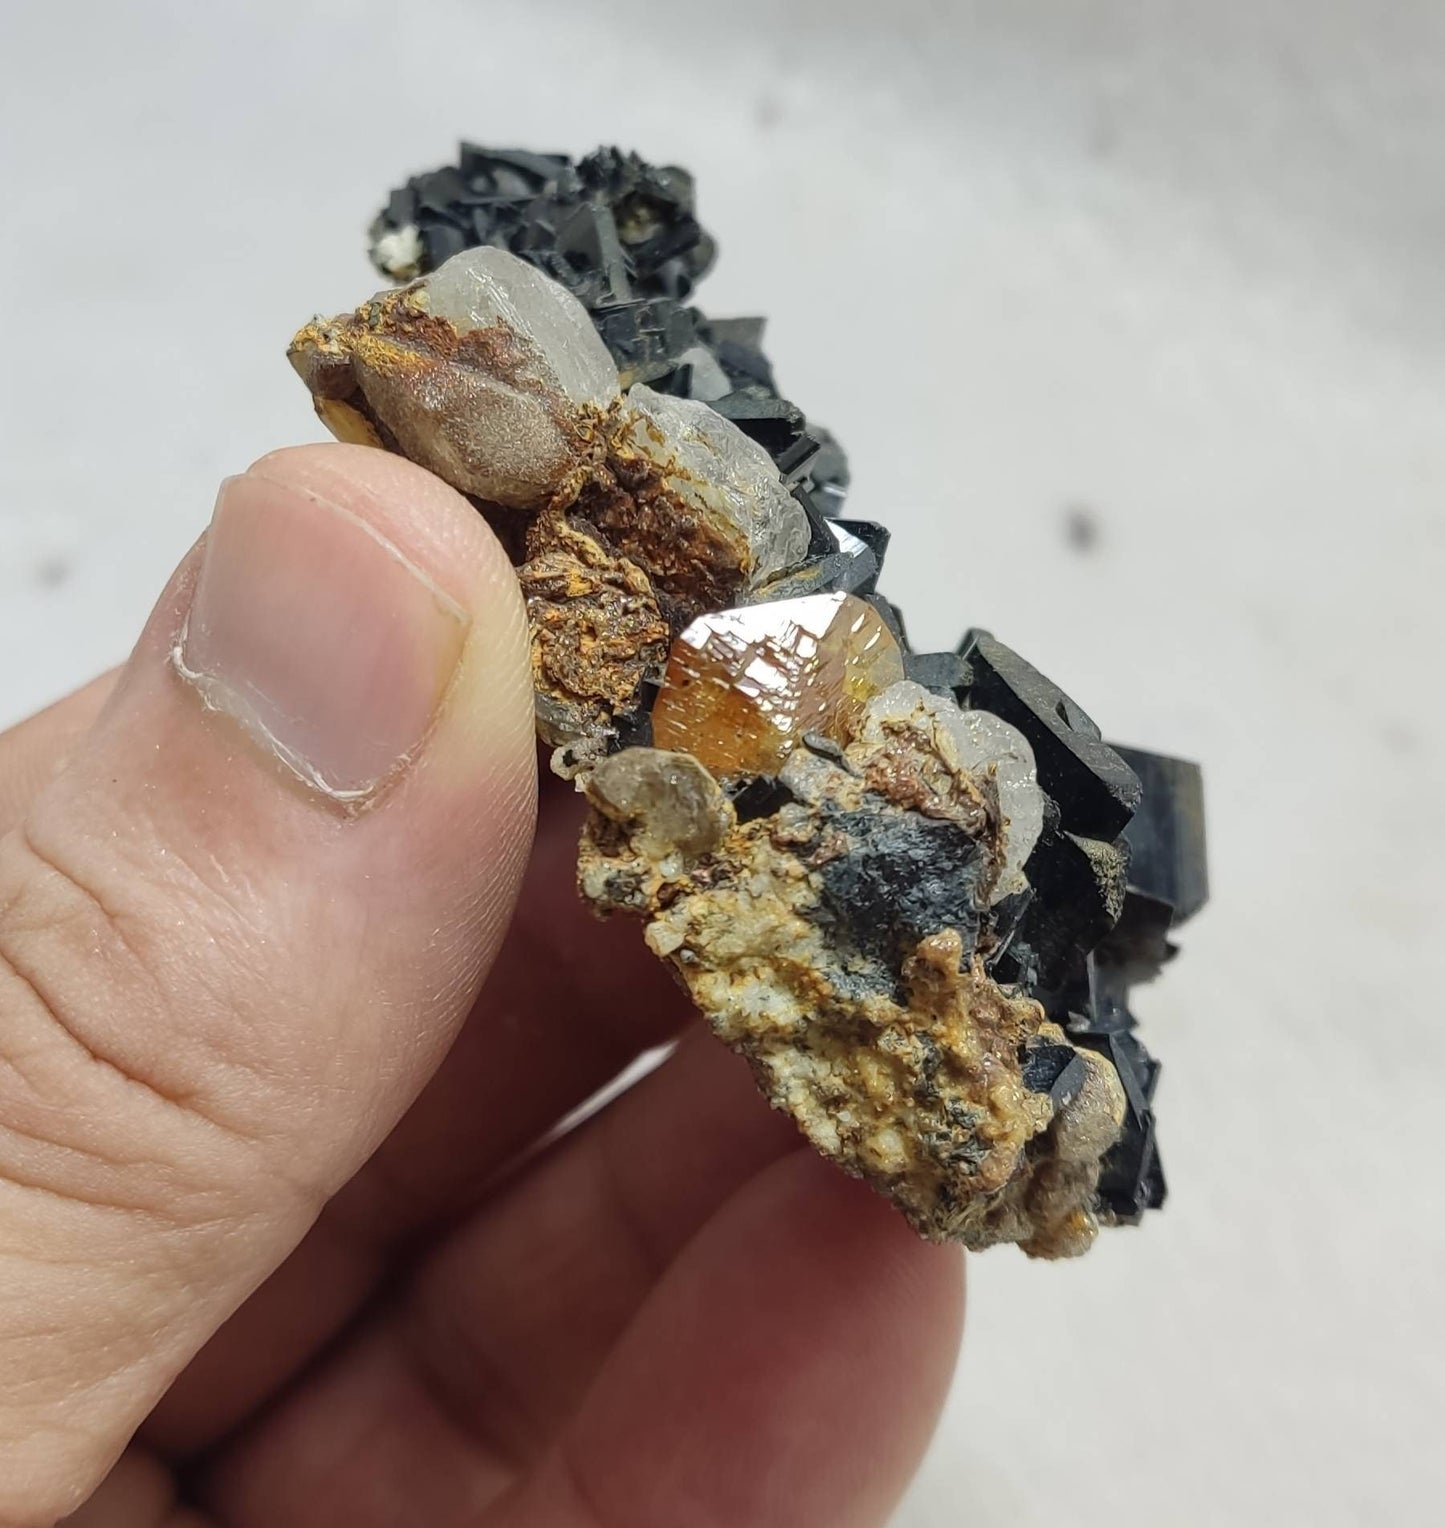 Aegirine crystals on matrix with titanite sphene and calcite 81 grams